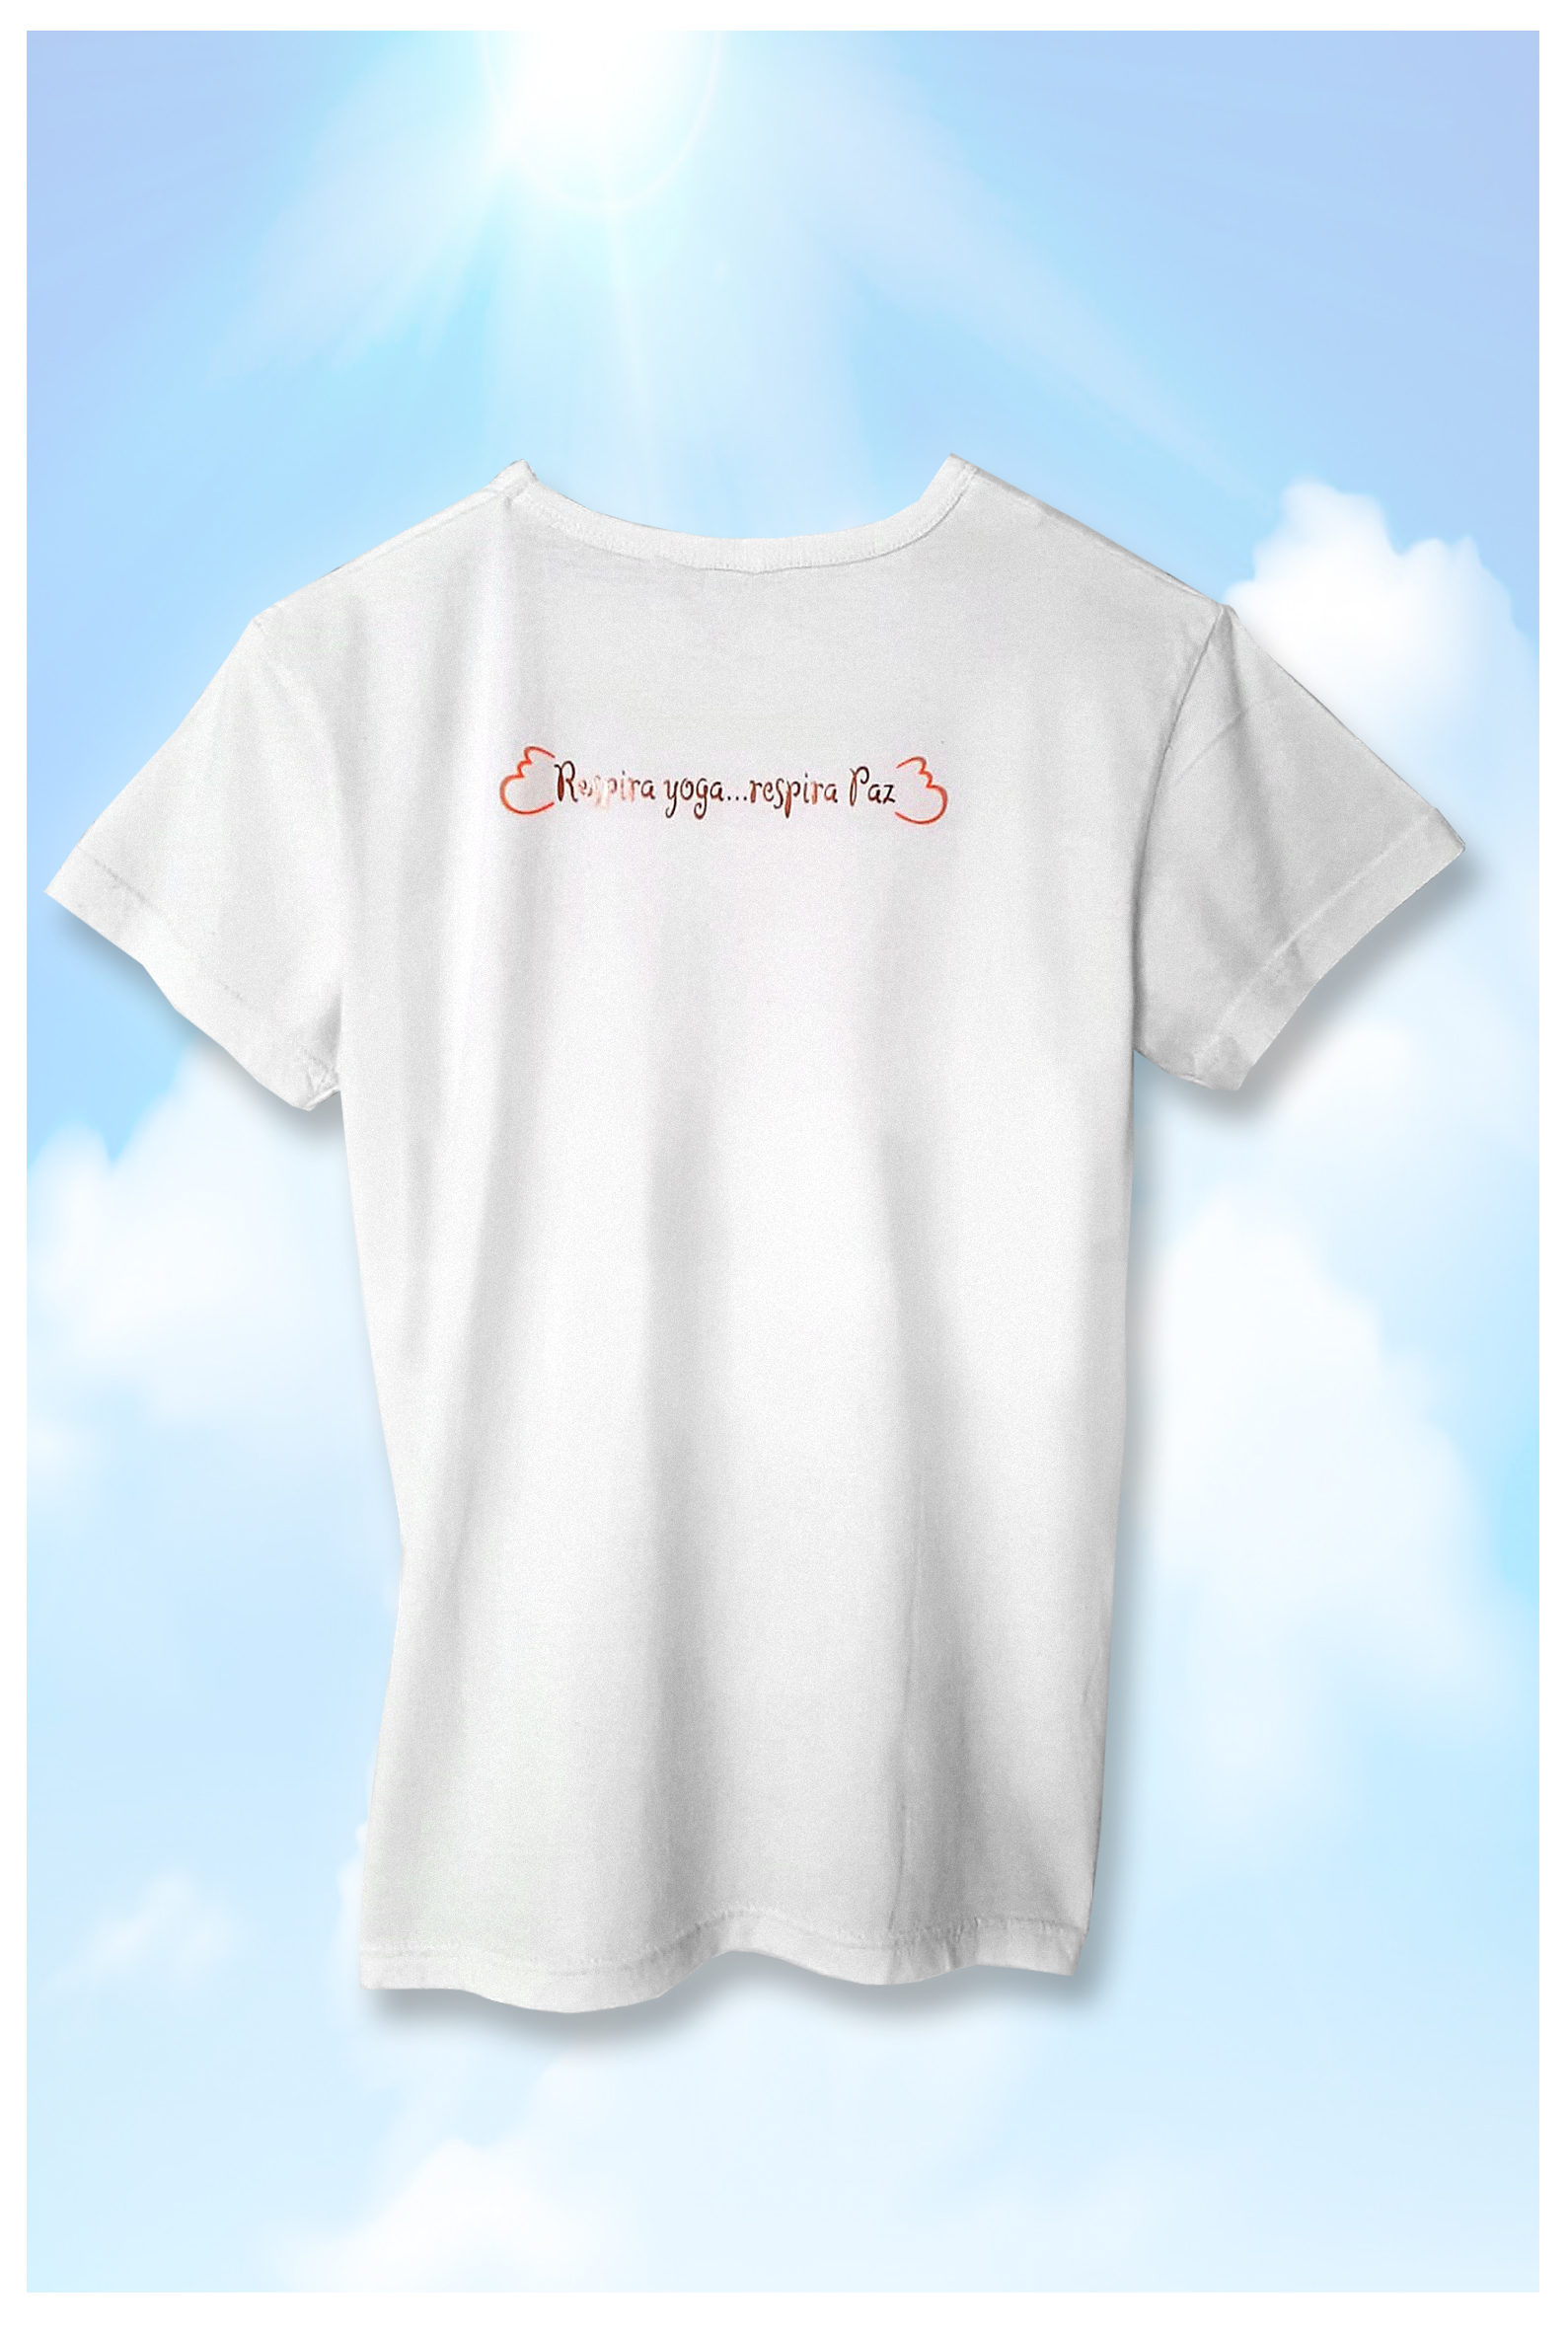 Camiseta manga corta algodón orgánico Respira YogaRespira paz - Mujer